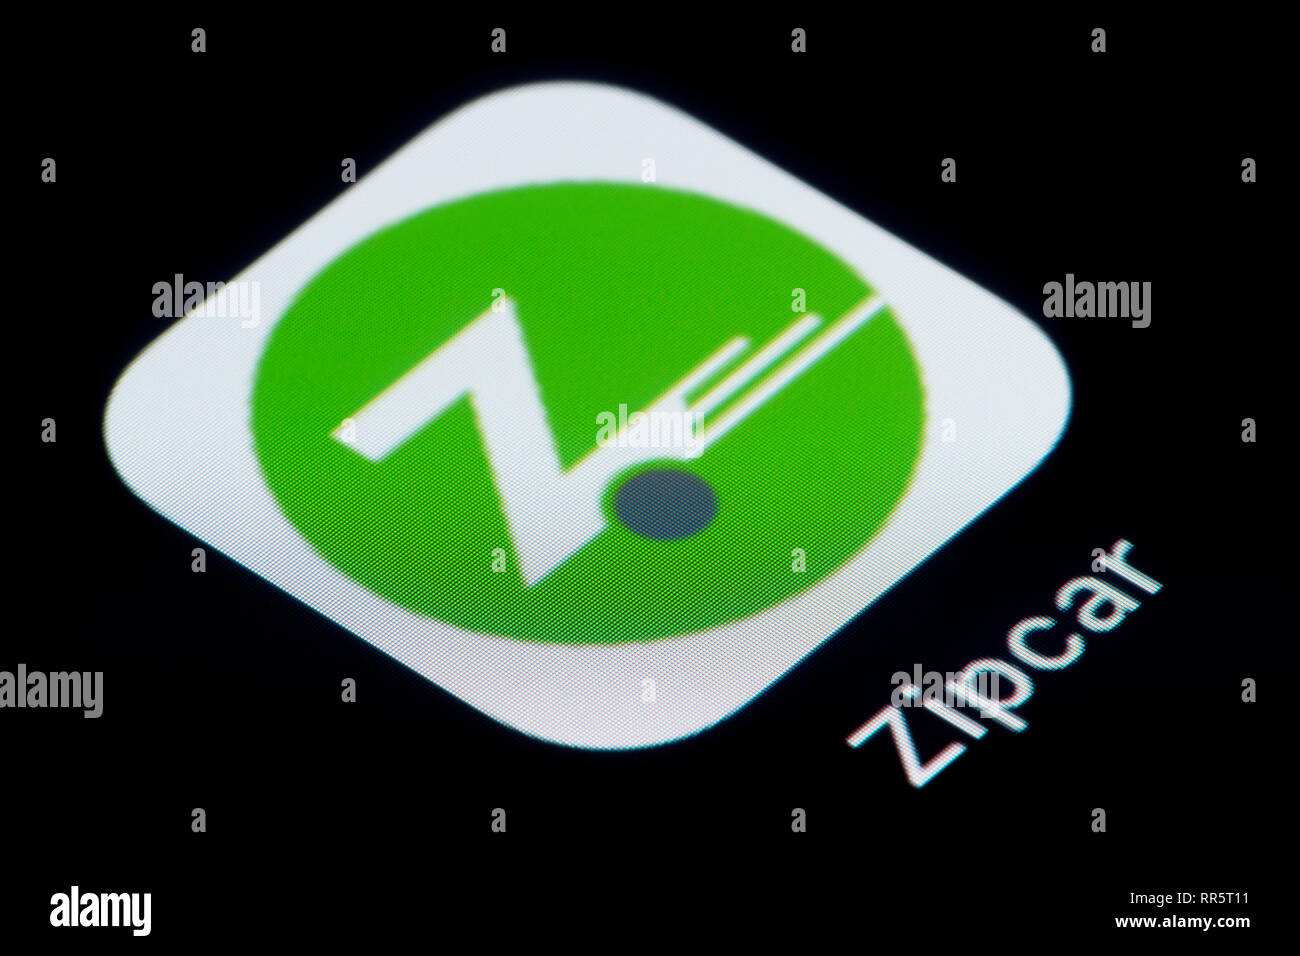 Un gros plan de l'icône de l'application Zipcar, comme on le voit sur l'écran d'un téléphone intelligent (usage éditorial uniquement) Banque D'Images